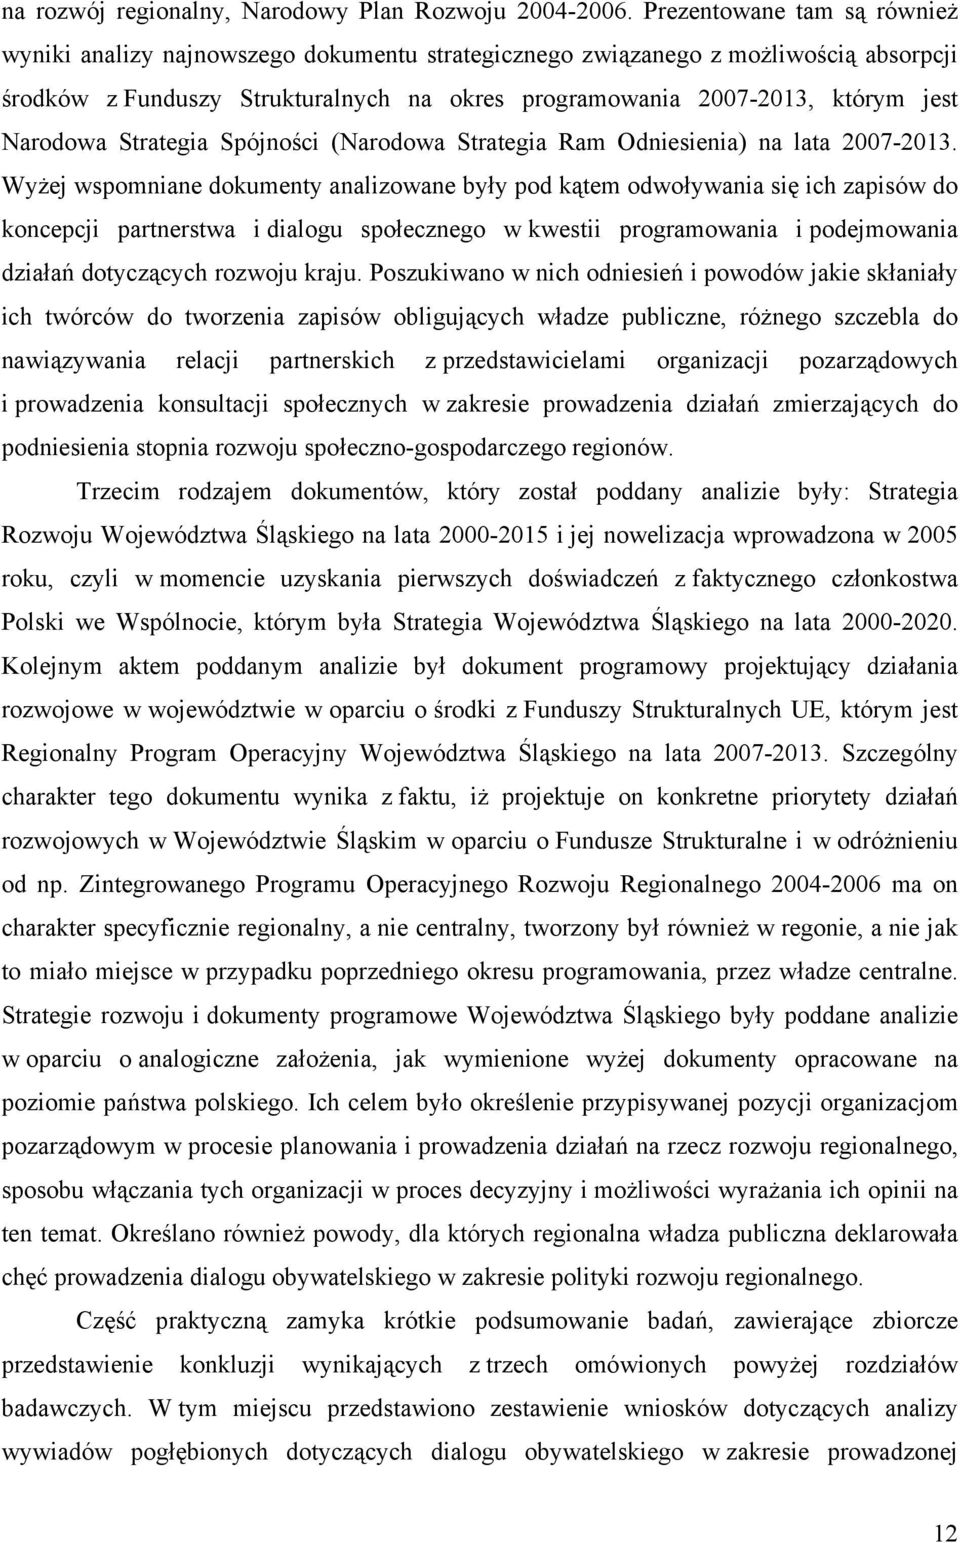 Narodowa Strategia Spójności (Narodowa Strategia Ram Odniesienia) na lata 2007-2013.